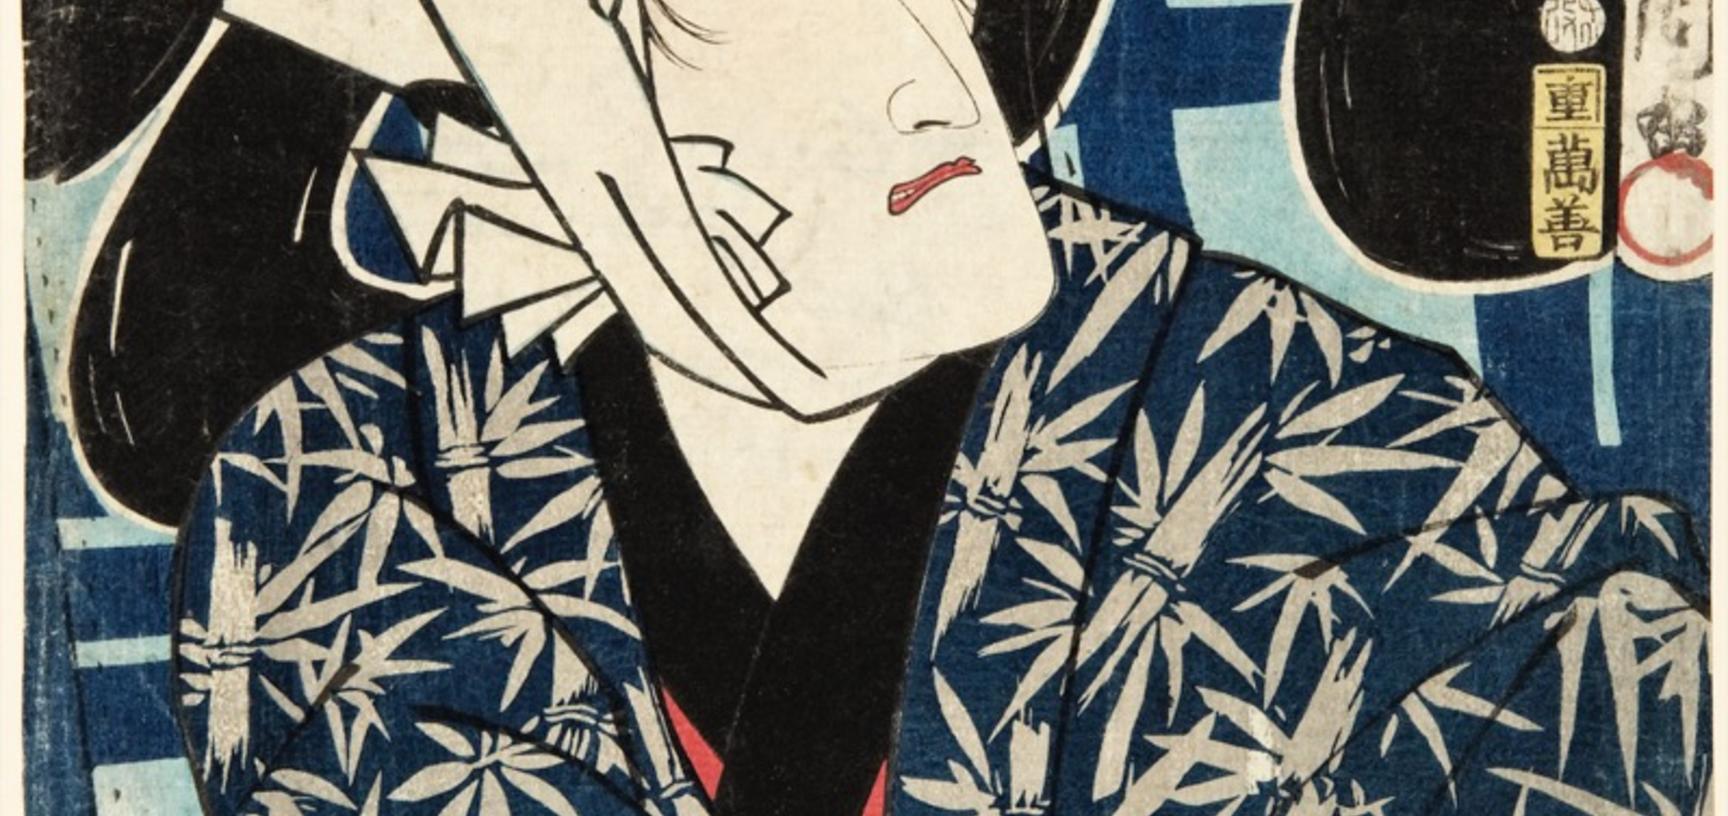 The actor Ichimura Kakitsu IV performing the role of Tamaya Shinbei in the kabuki play Tsukinode mura rokuya no hitofushi in the Ichimura-za, one of the oldest licensed theatres in Edo (now Tokyo). Woodblock print by Toyohara Kunichika. 1864. (Copyright P